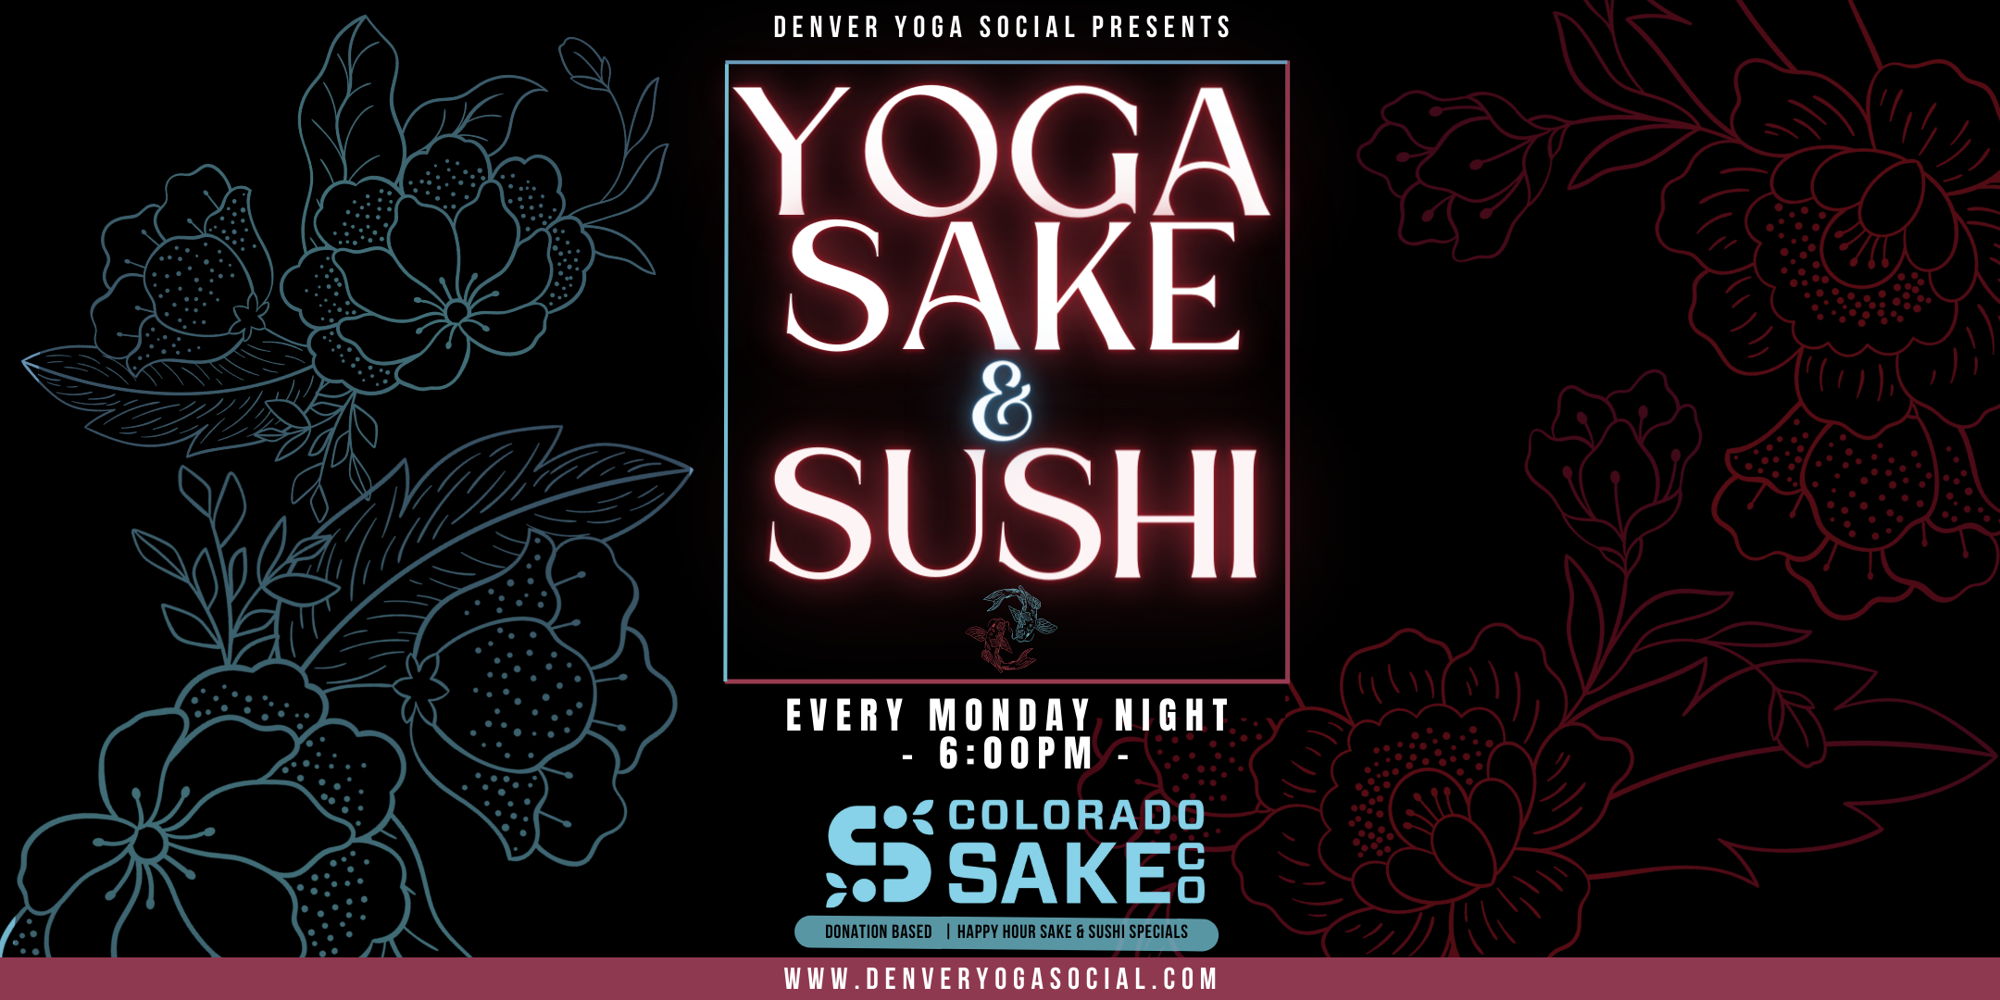 Yoga Sake & Sushi promotional image